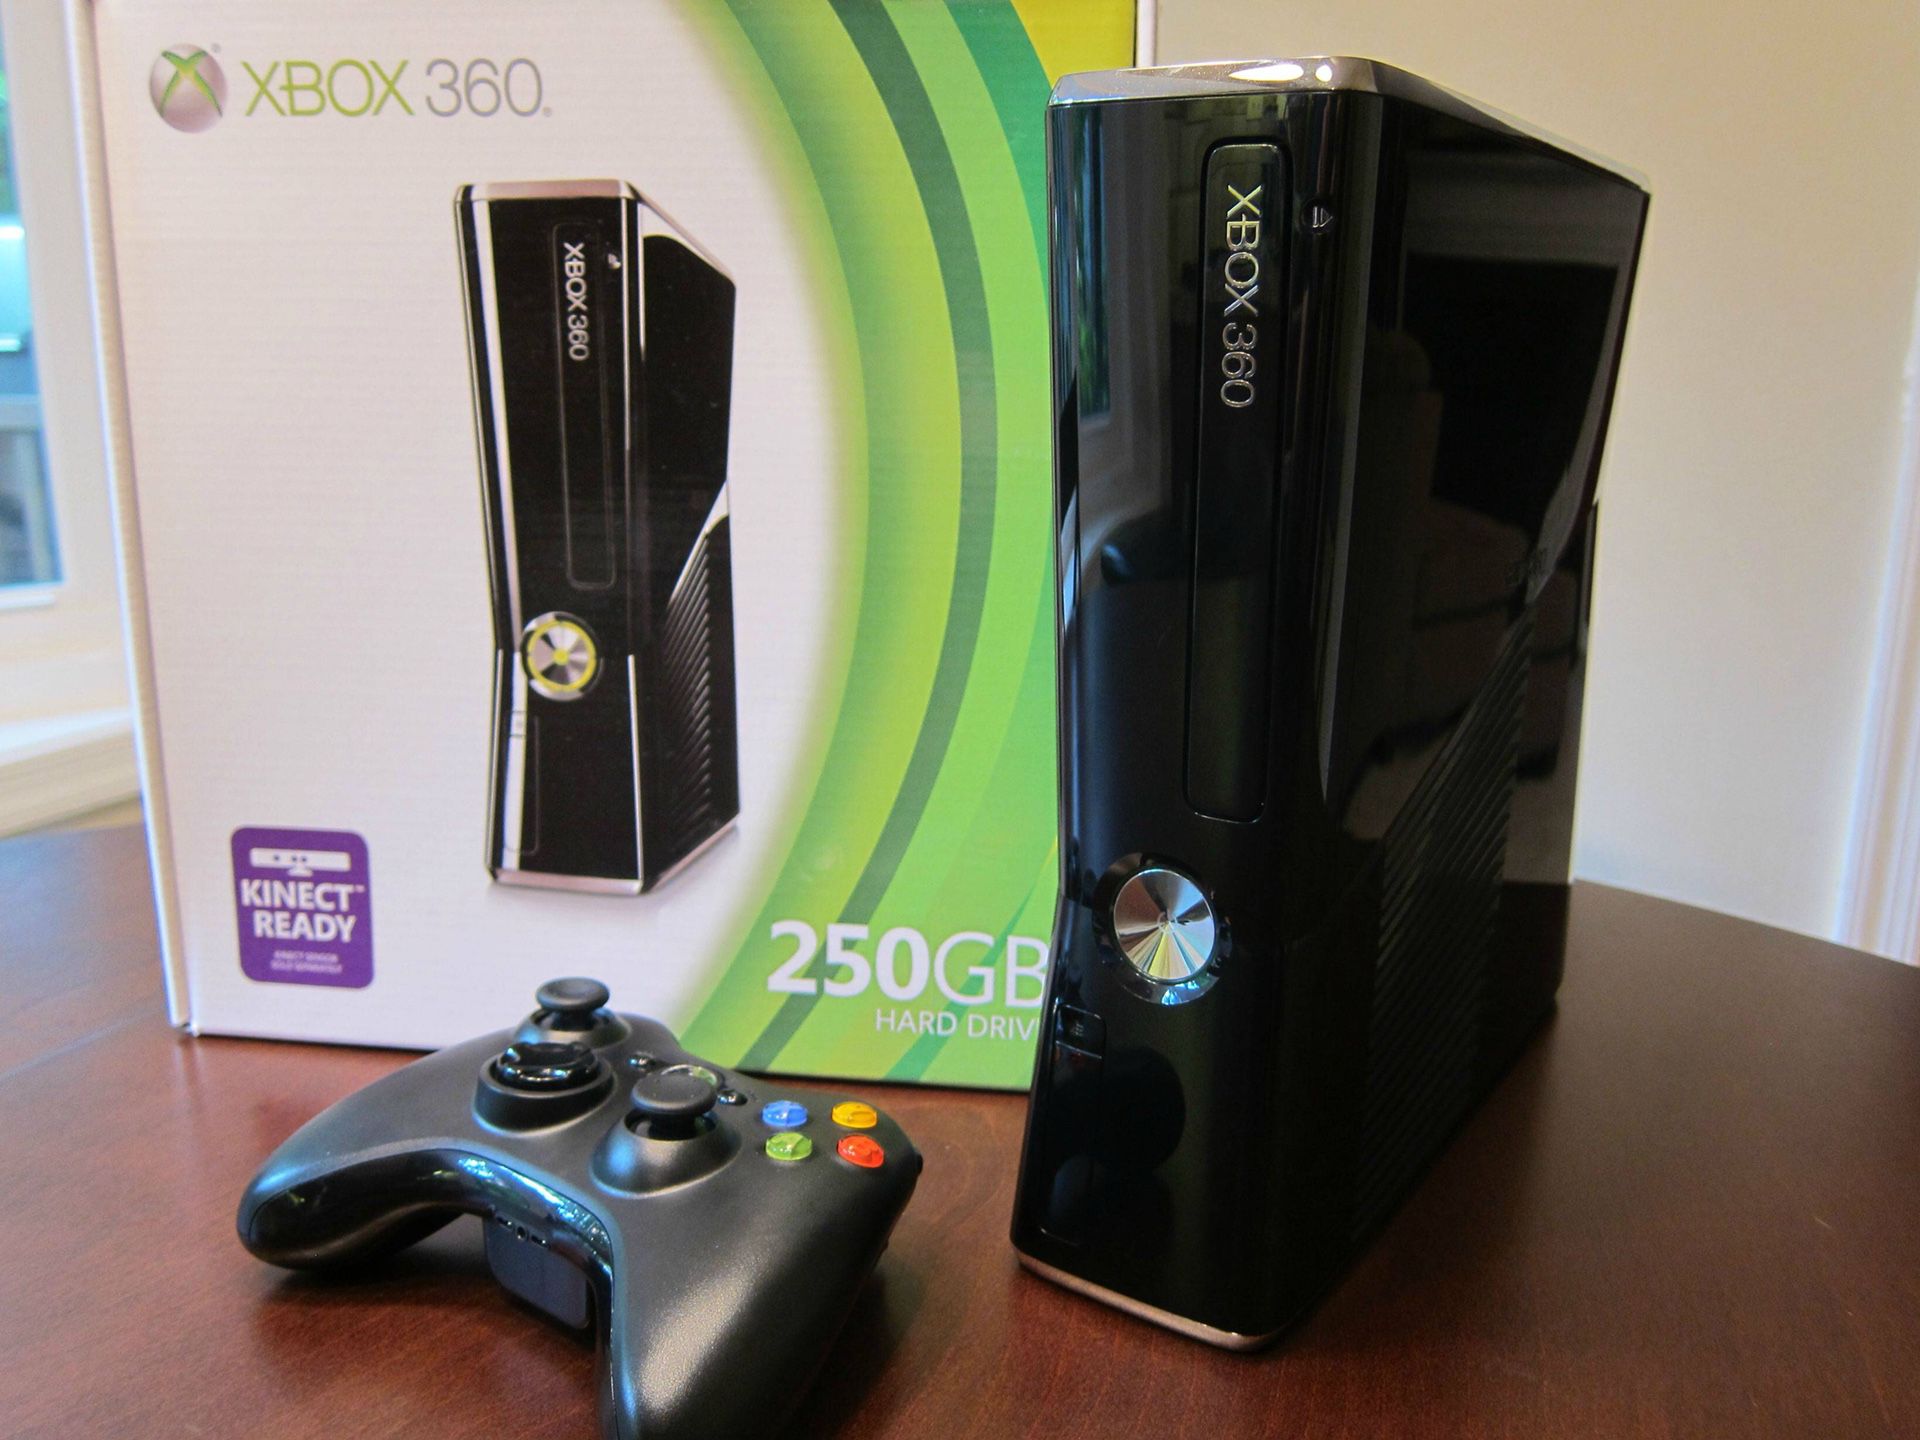 Хбох фрибут. Xbox 360 Slim. Приставка Xbox 360 Slim. Xbox 360 Slim e. Игровая приставка Xbox 360 250 GB.